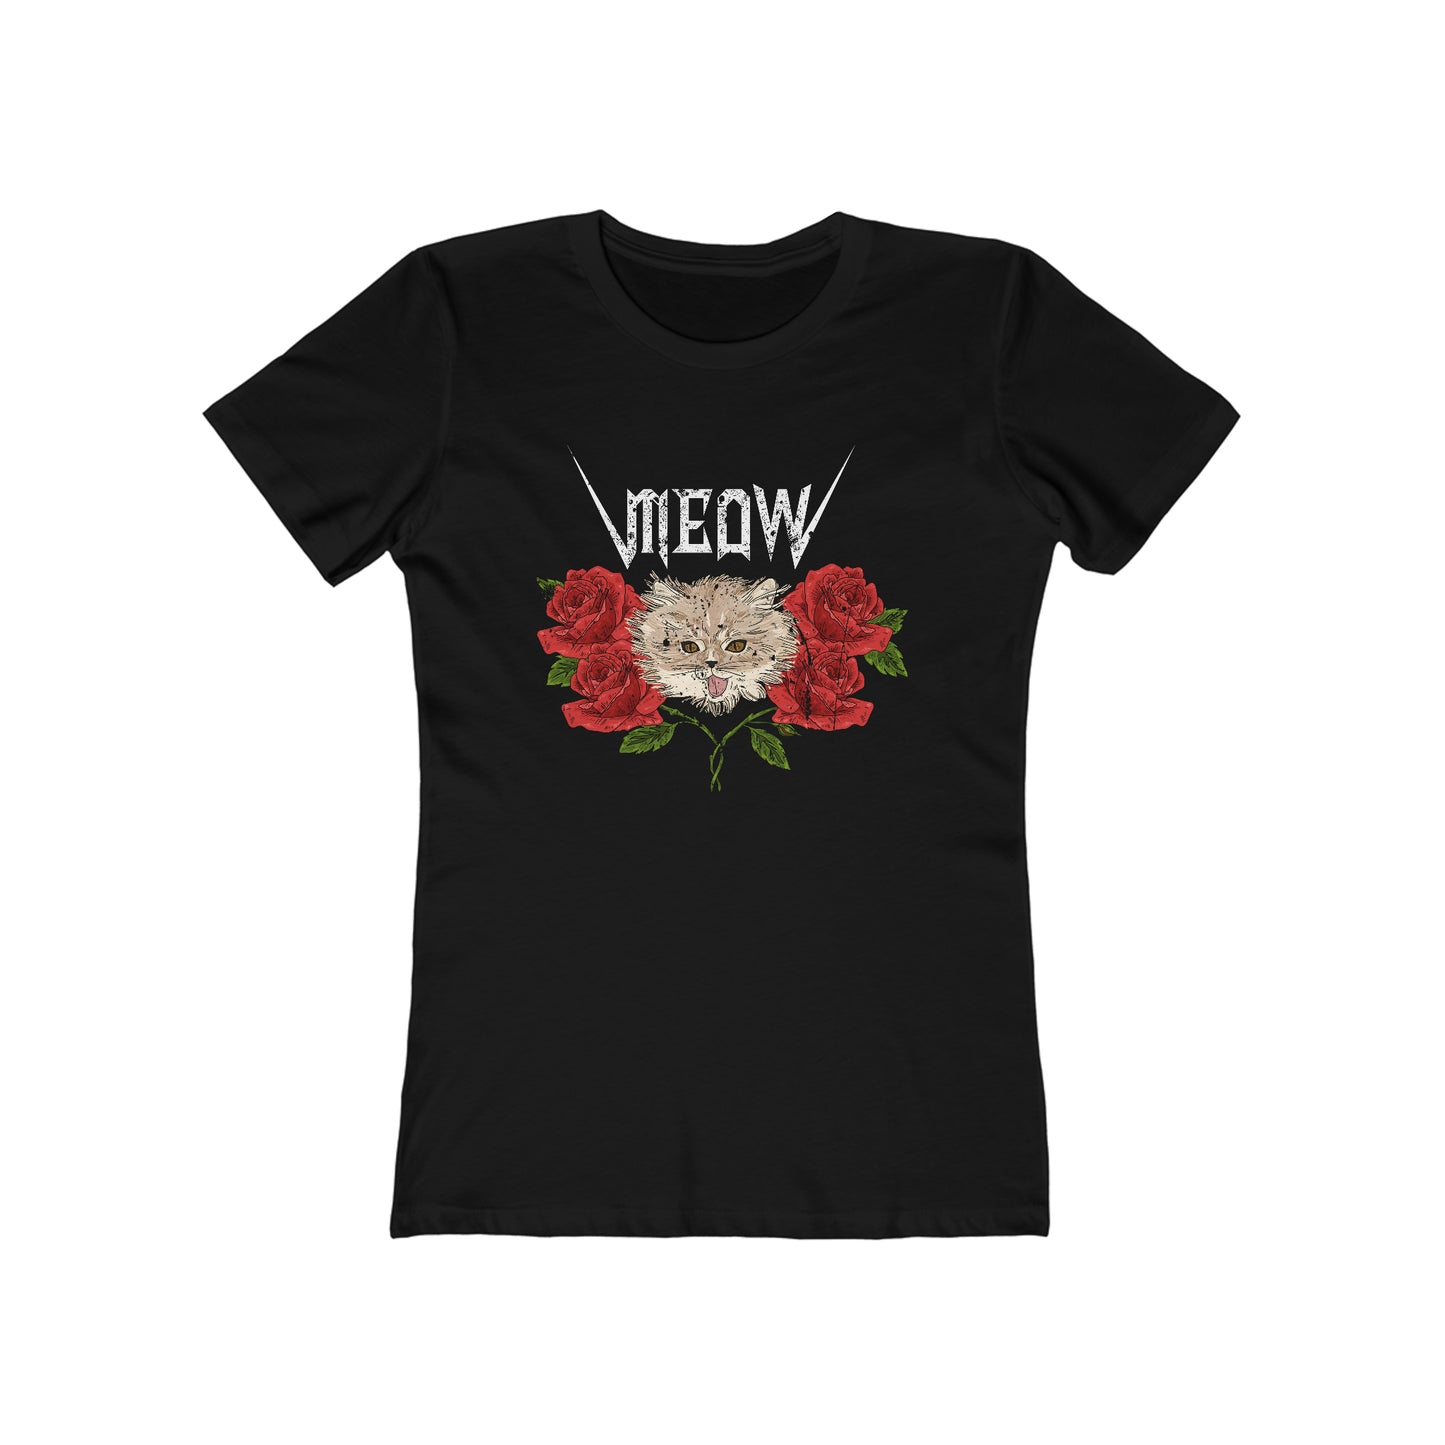 Meow - Women's T-shirt